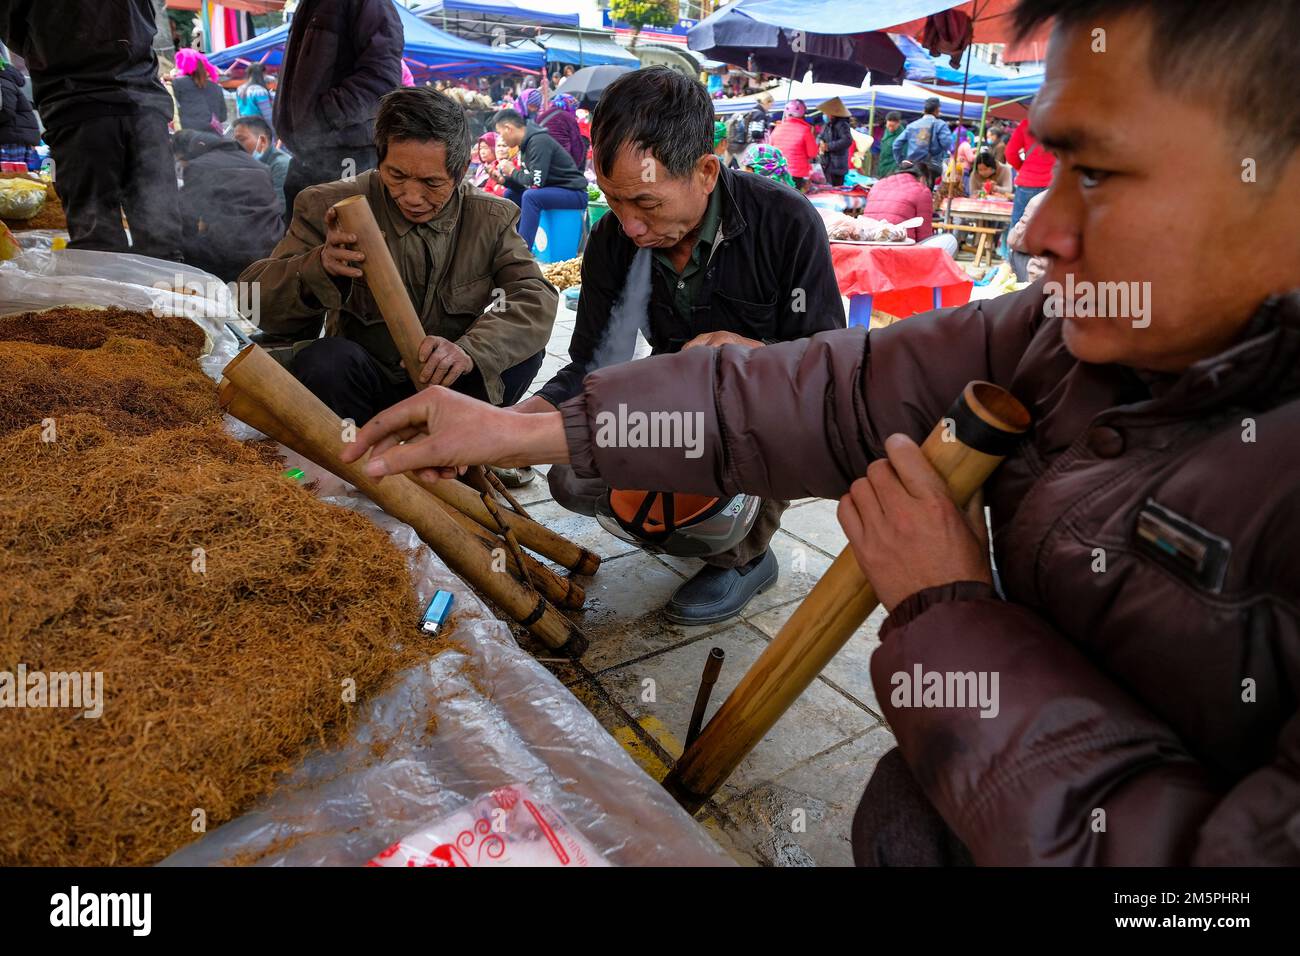 BAC Ha, Vietnam - 18. Dezember 2022: Männer, die auf dem Wochenmarkt von Bac Ha in Vietnam Tabak rauchen. Stockfoto